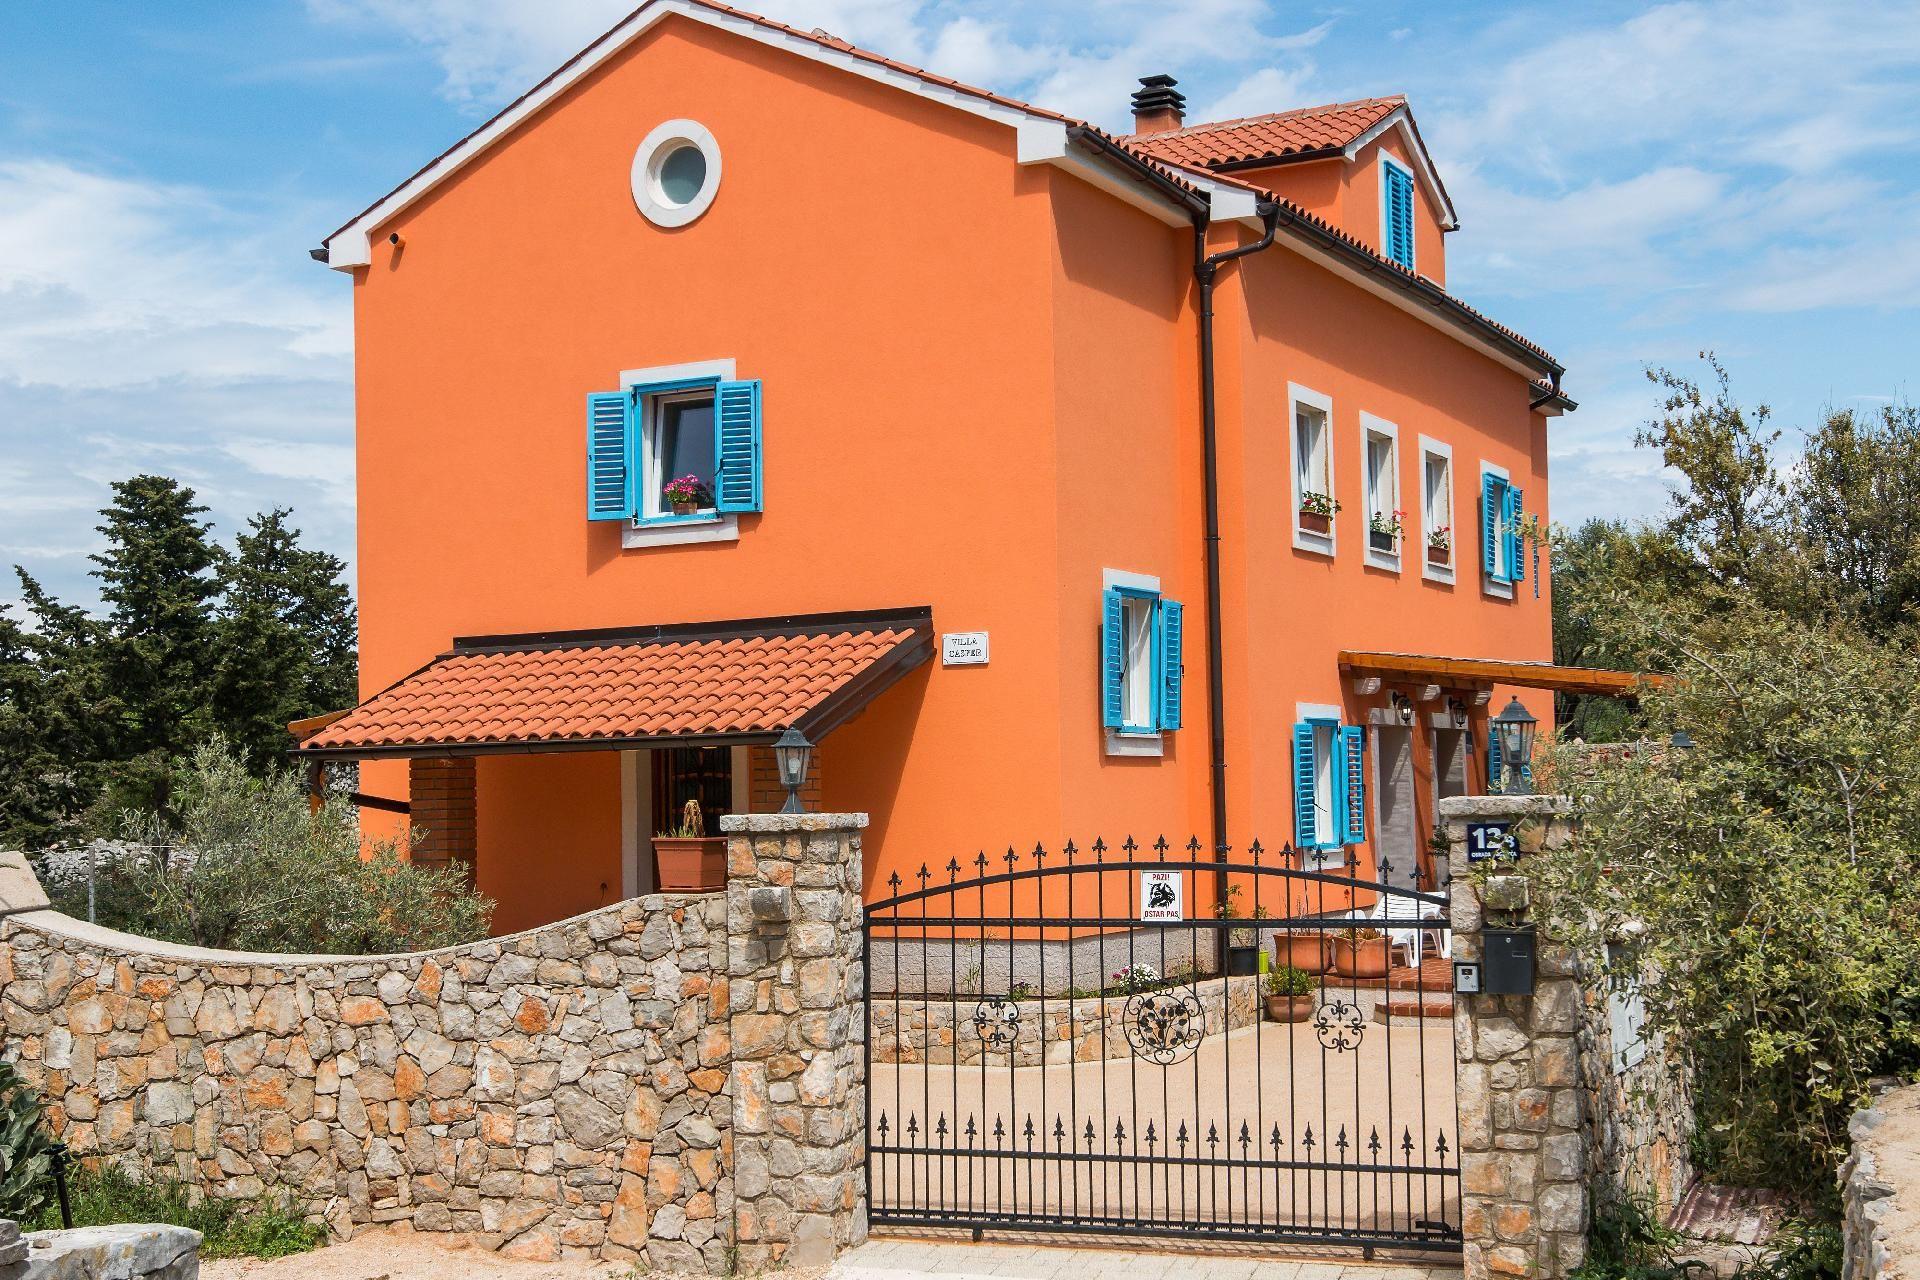 Appartement in Veli Lo?inj mit Terrasse, Garten un Ferienhaus  kroatische Inseln